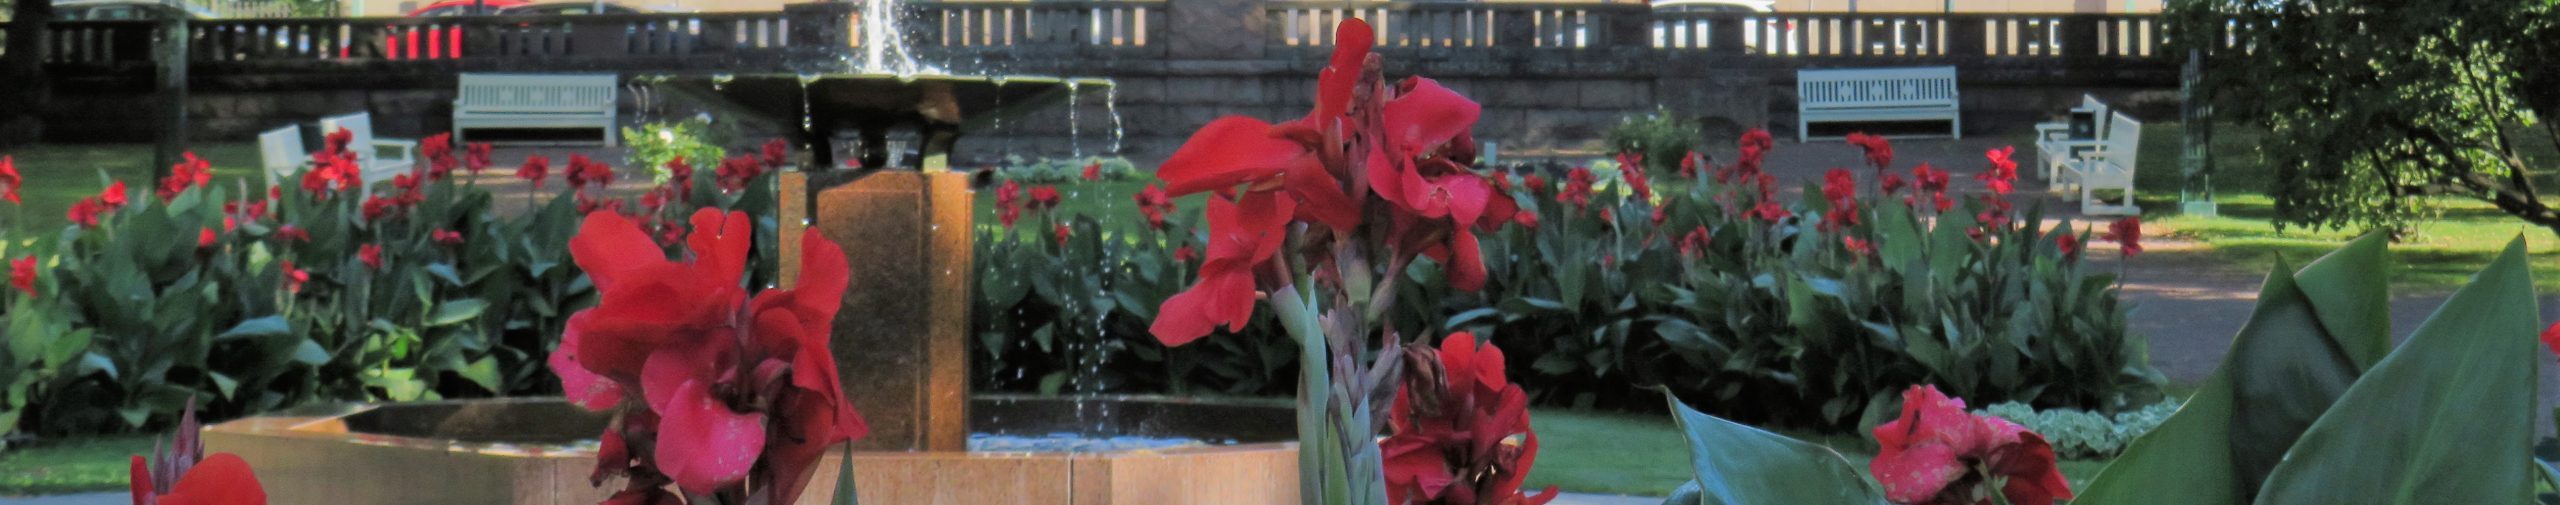 Lähikuvassa edessä punaisia kukkia. Taustalta erottuu vesilähde, samaisia kukkia paljolti ja puistonpenkkejä.